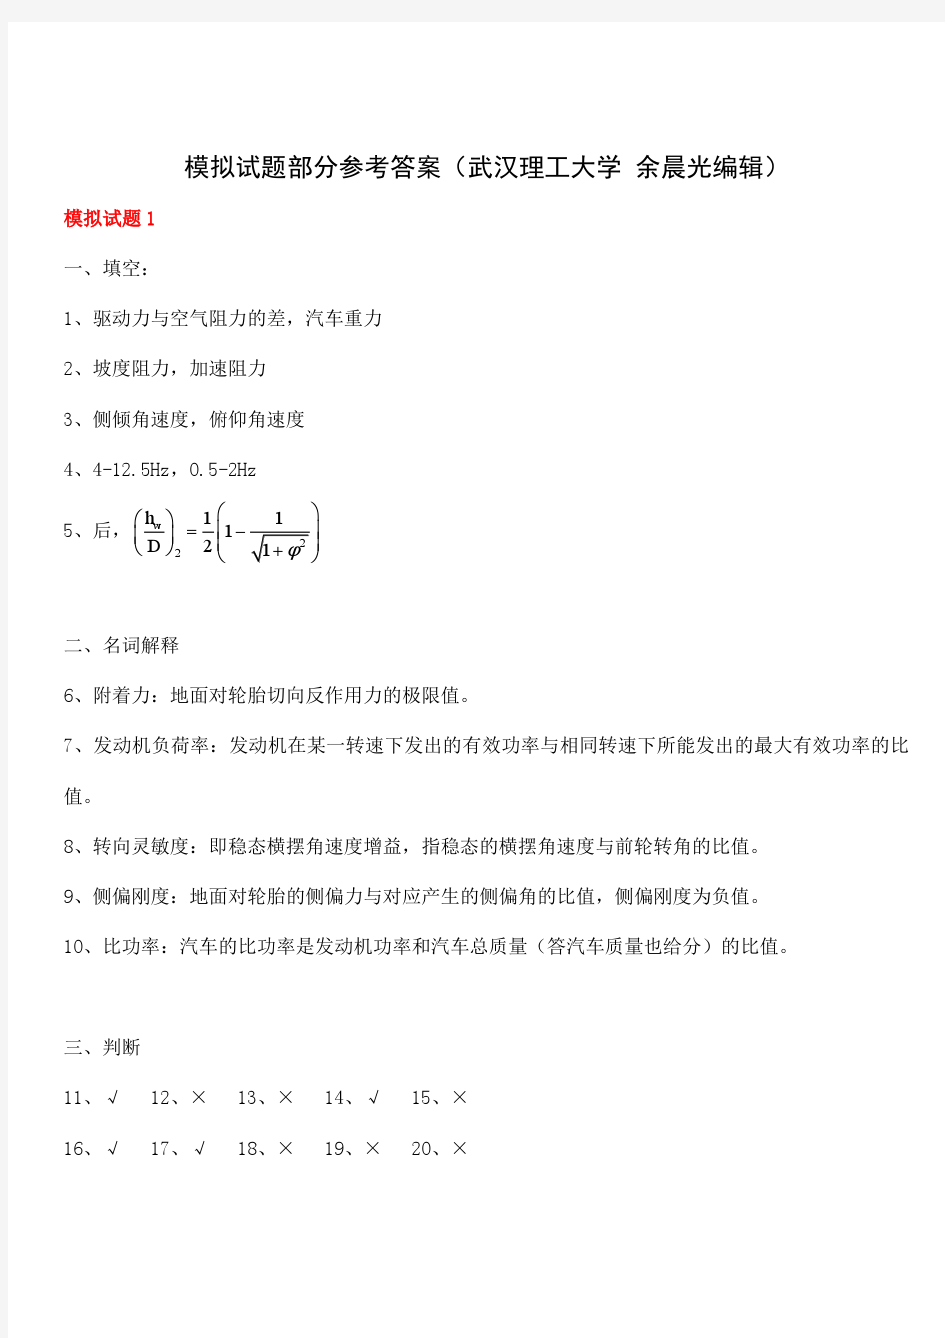 (答案1-7合集单独版)汽车理论模拟试题参考答案-武汉理工大学,考试必看